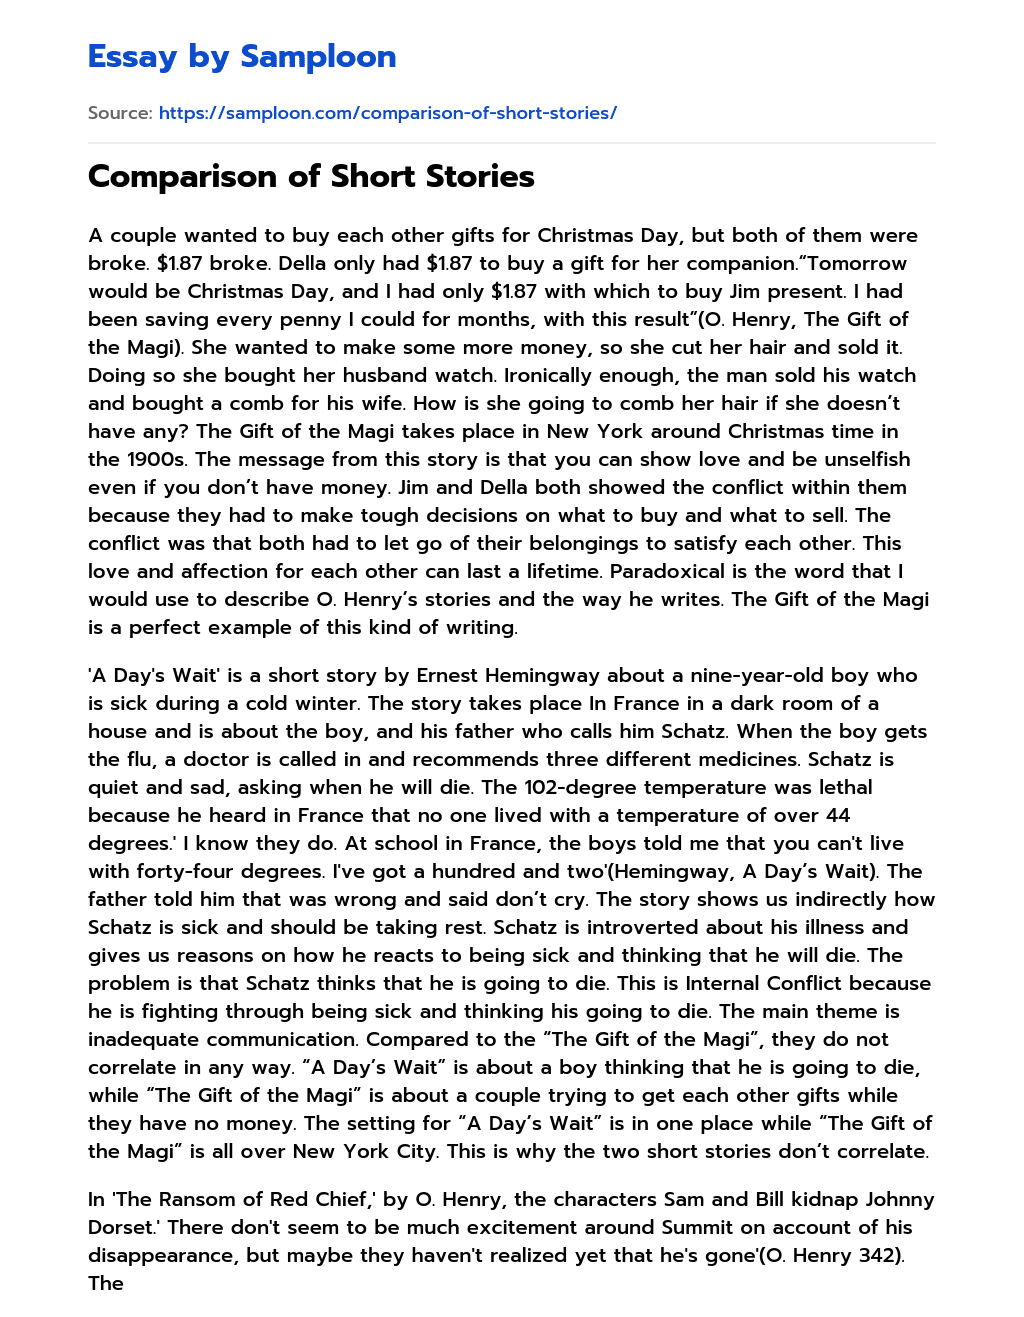 Comparison of Short Stories essay